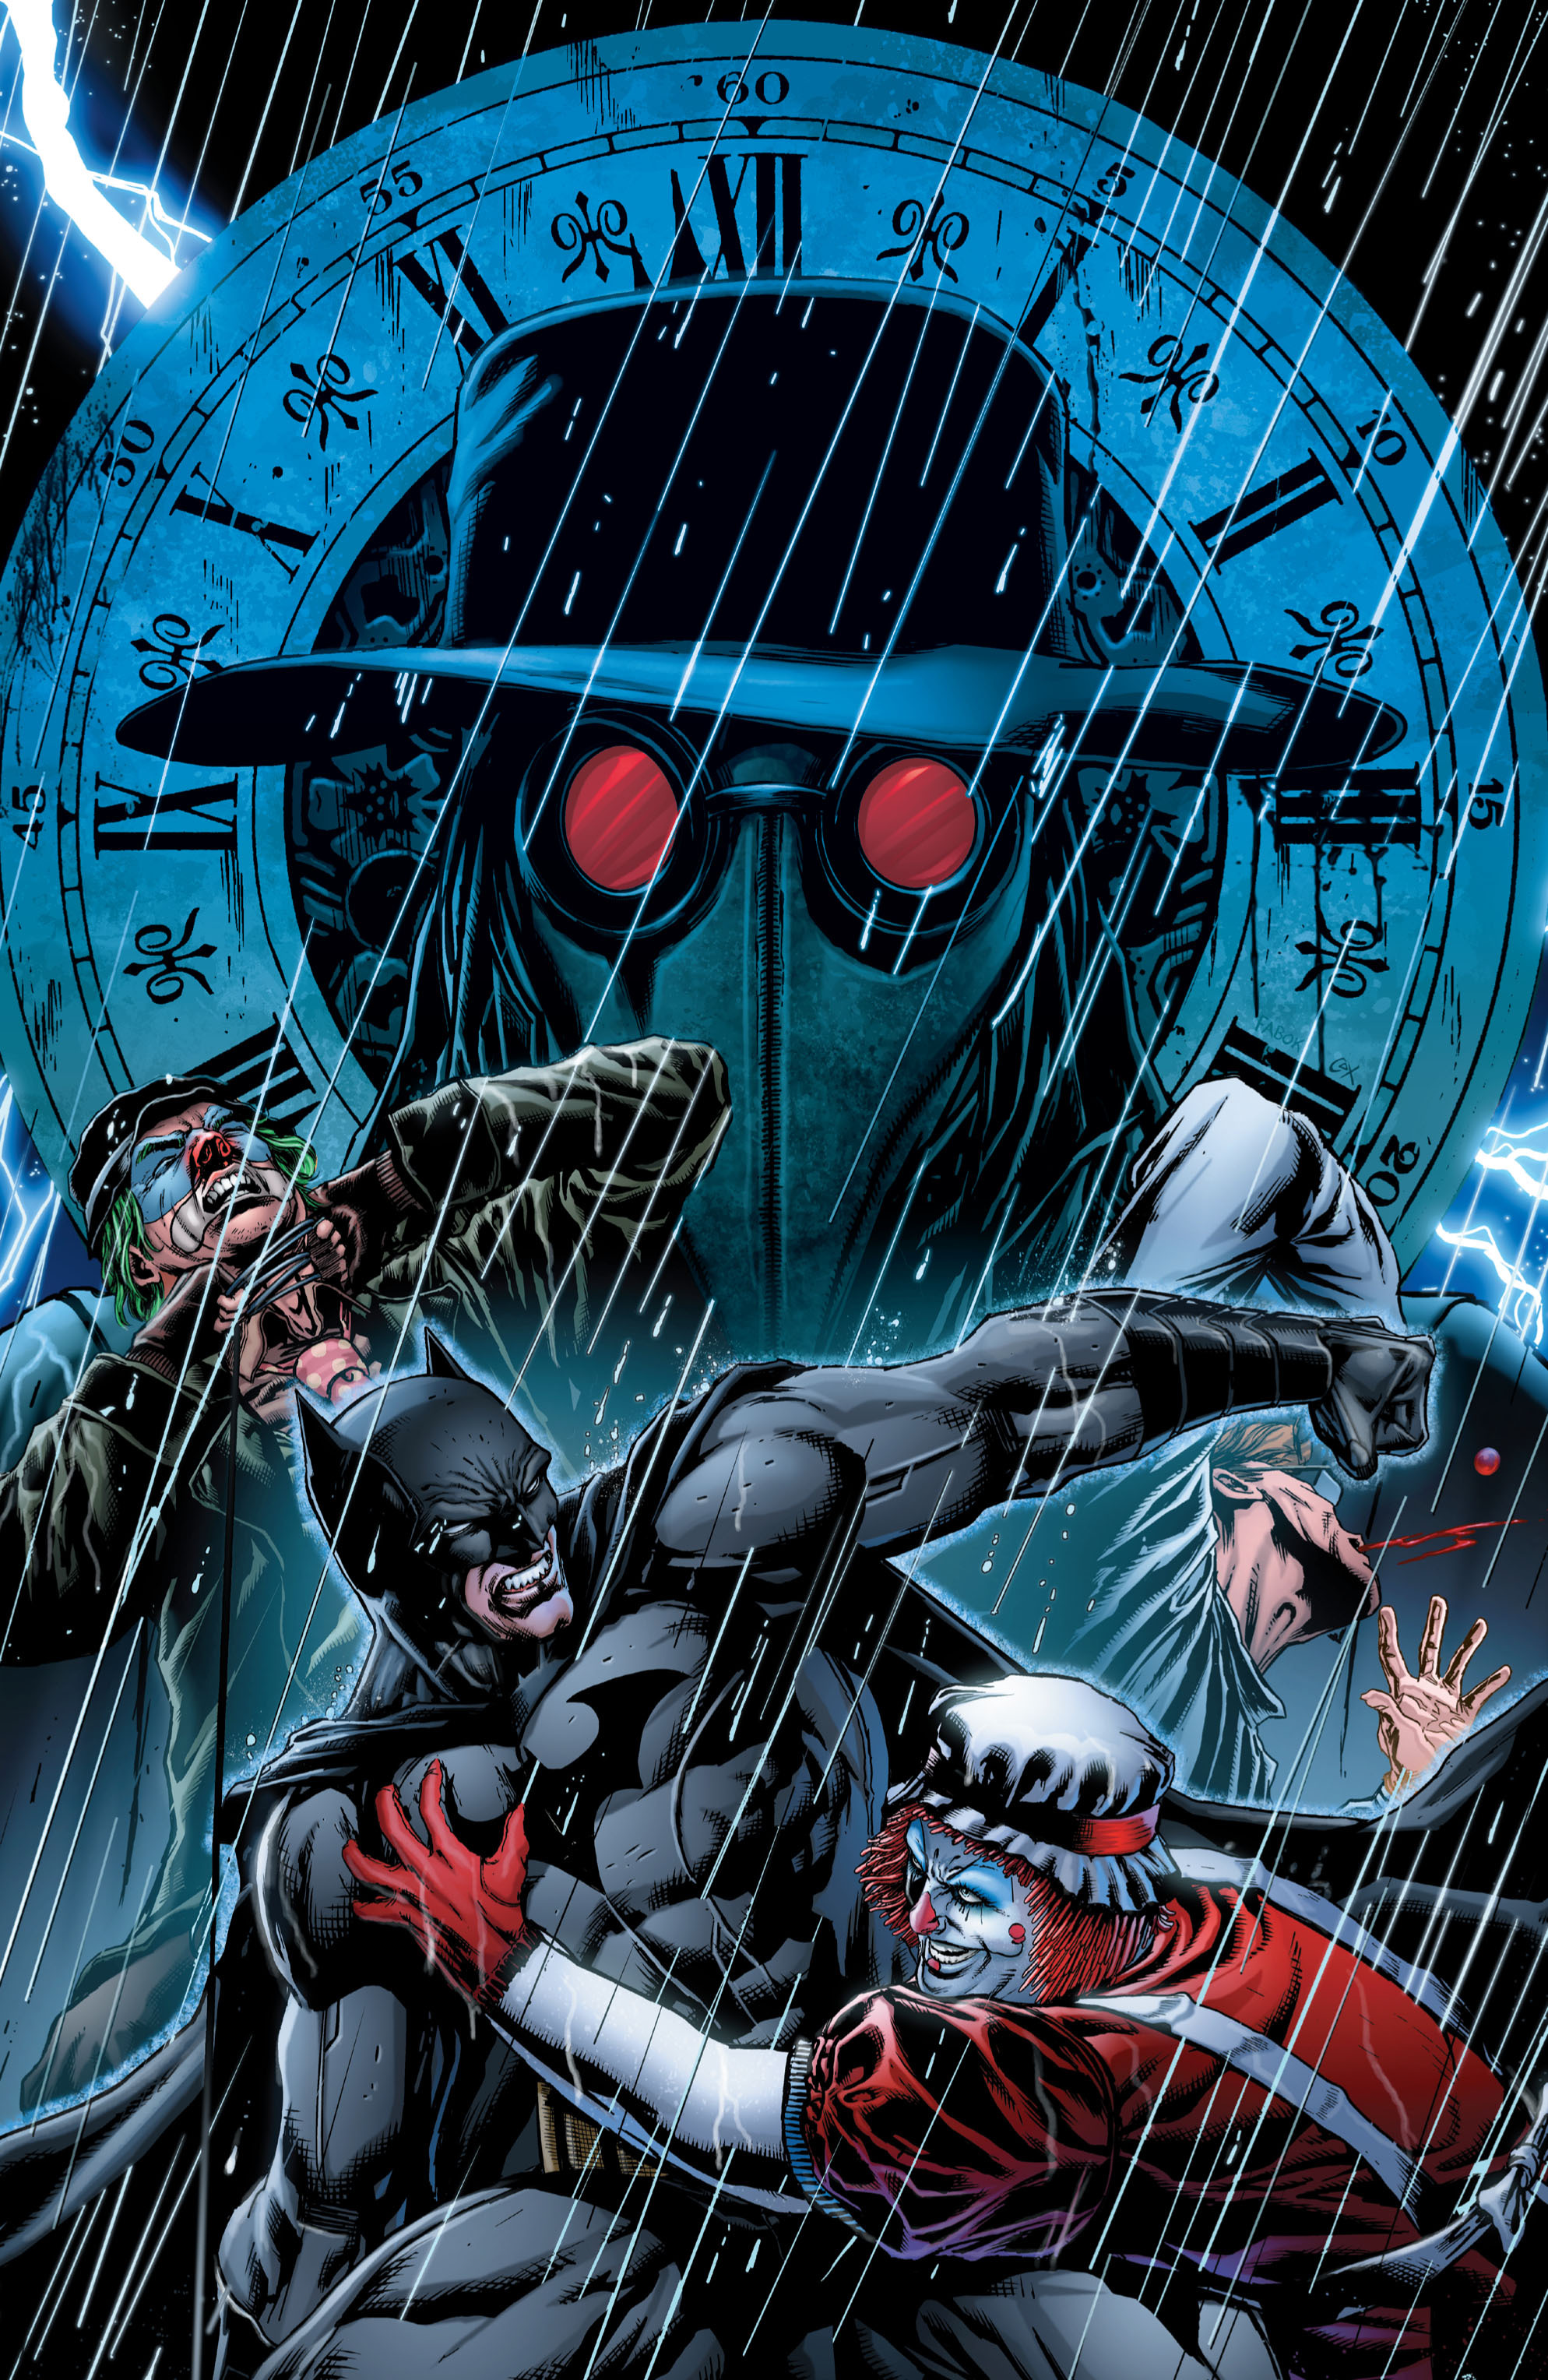 Read online Batman: Detective Comics comic -  Issue # TPB 3 - 121